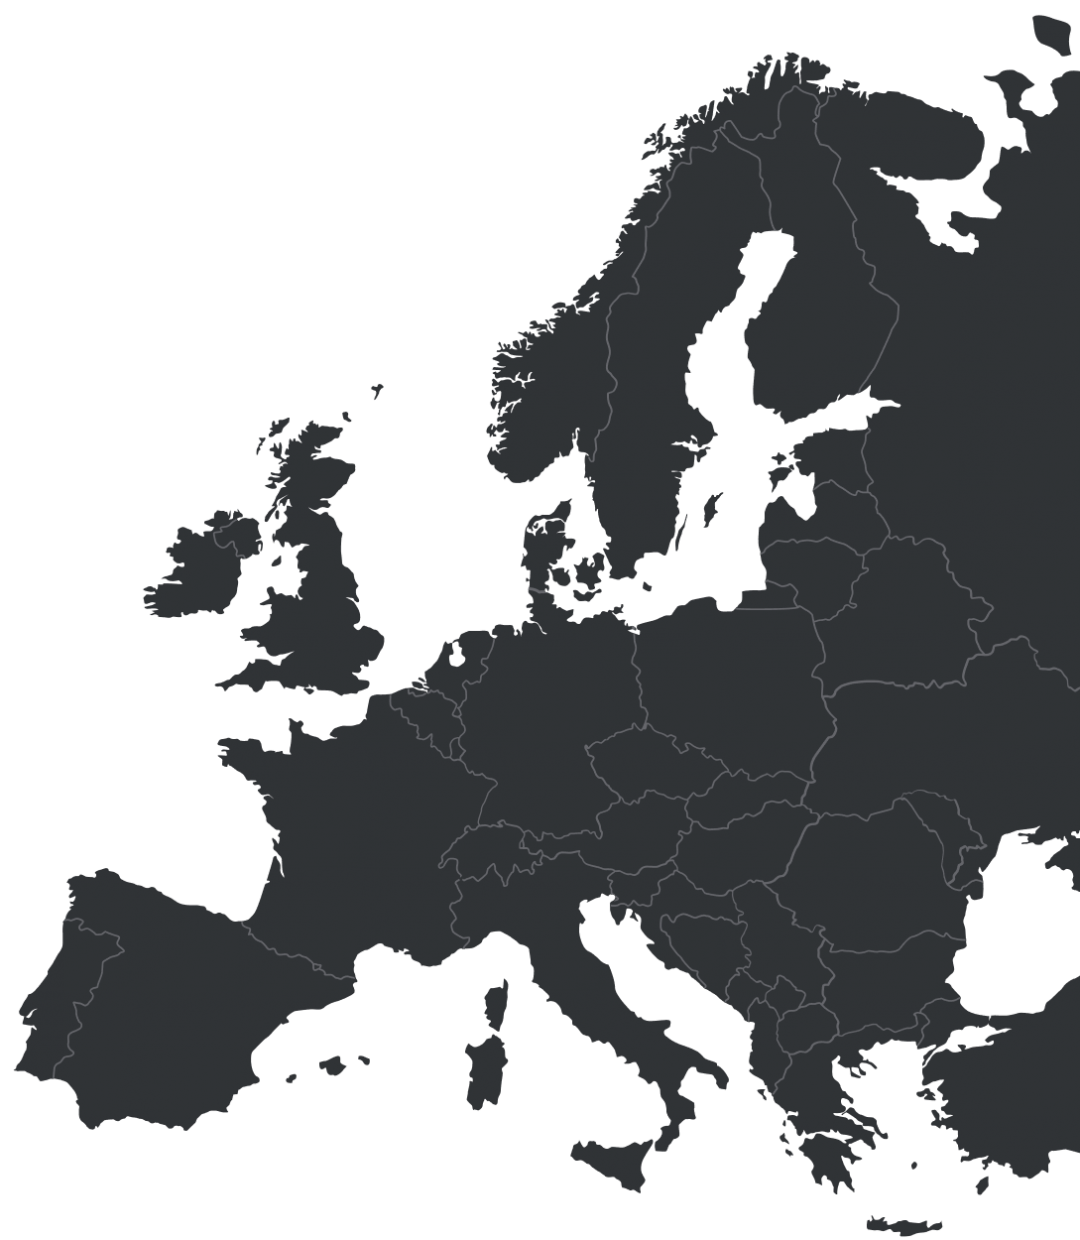 Europe map hotspots